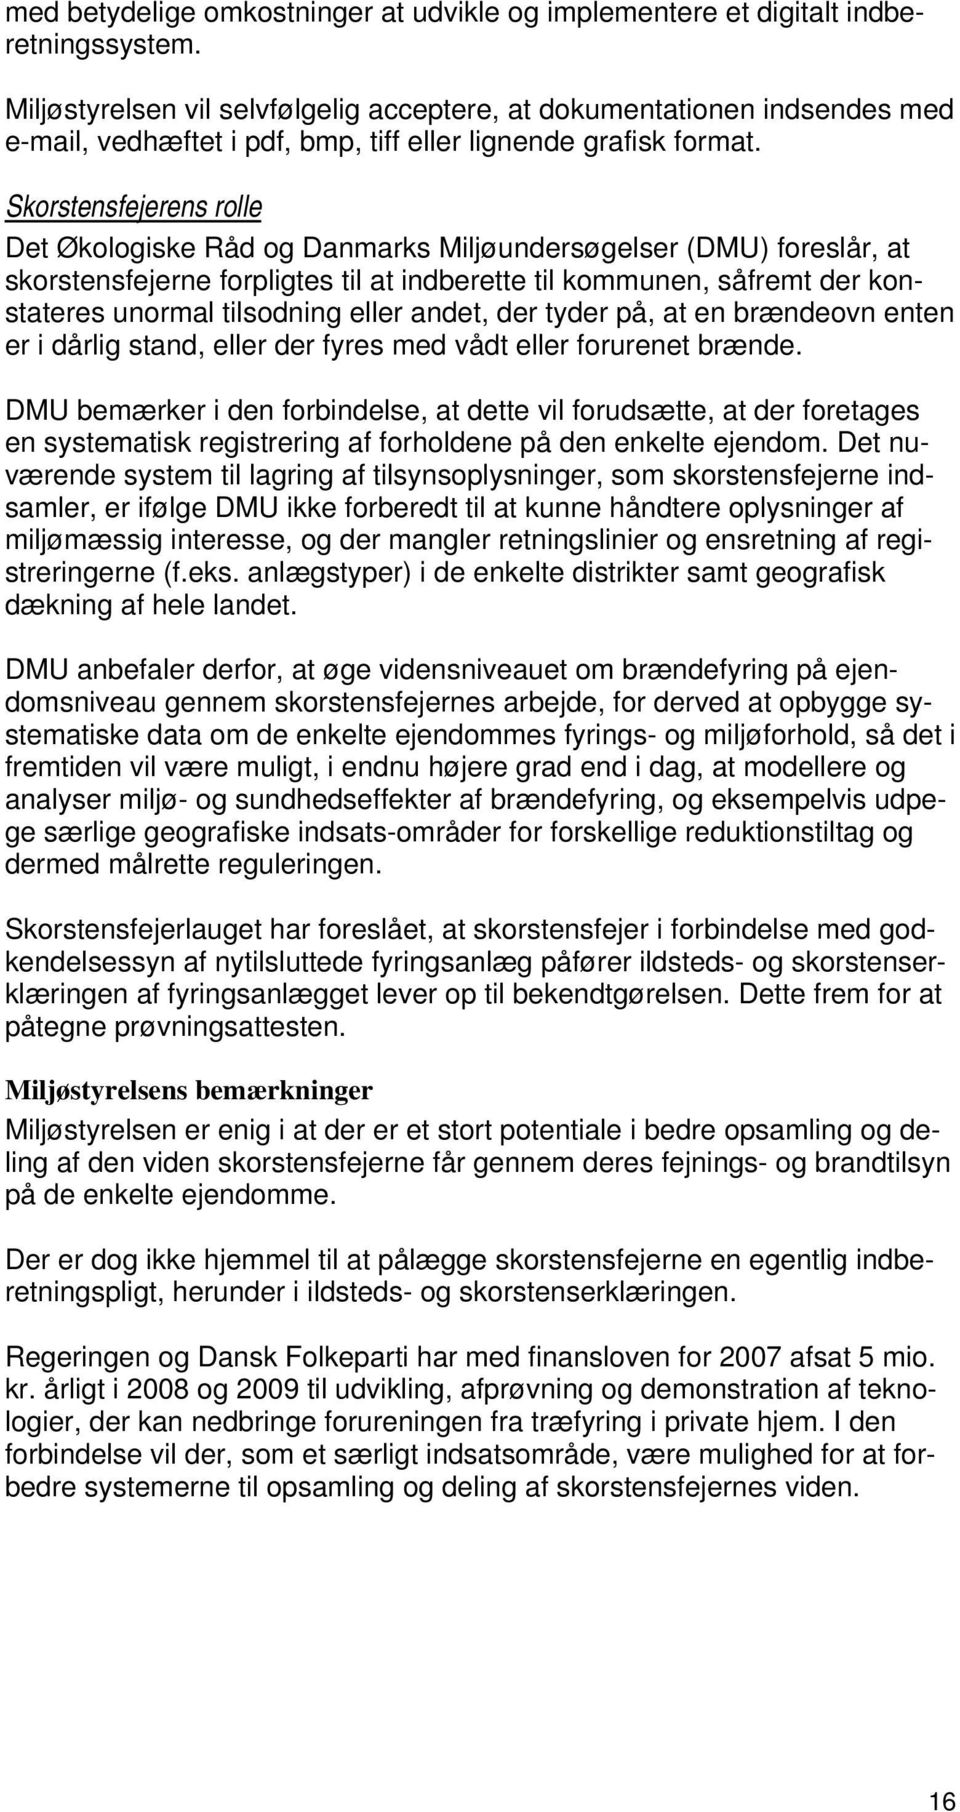 Skorstensfejerens rolle Det Økologiske Råd og Danmarks Miljøundersøgelser (DMU) foreslår, at skorstensfejerne forpligtes til at indberette til kommunen, såfremt der konstateres unormal tilsodning